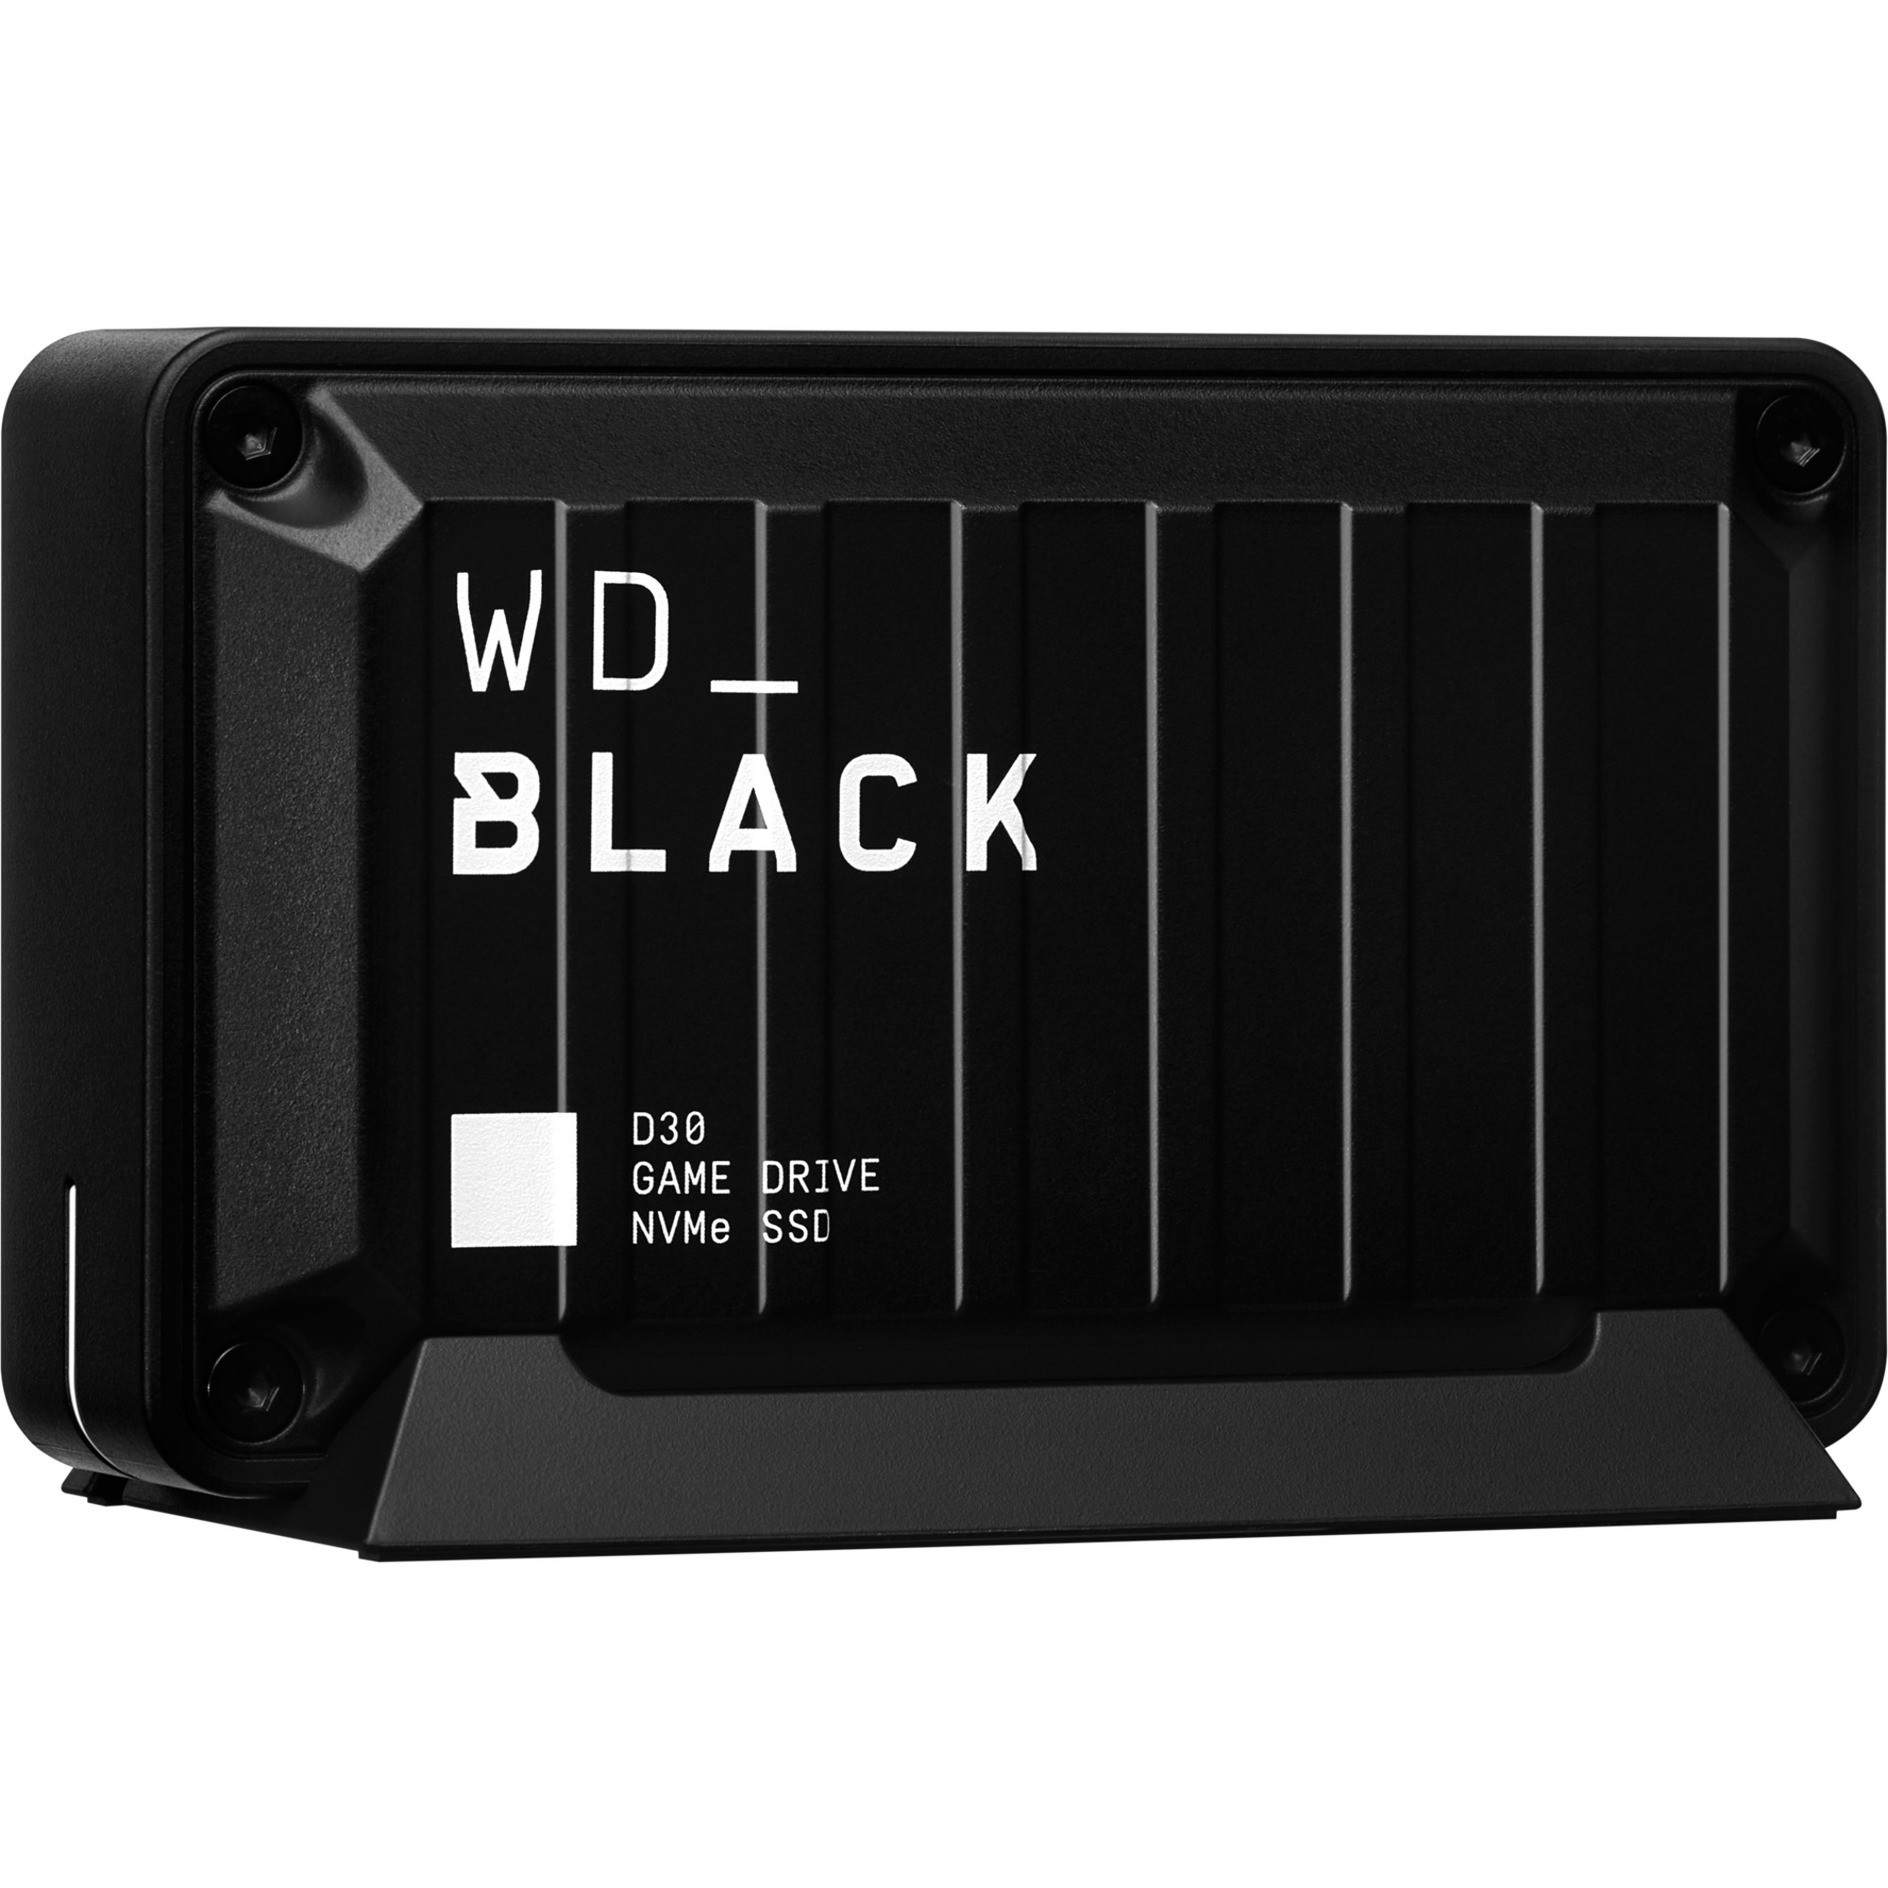 Image of Alternate - Black D30 Game Drive SSD 1 TB, Externe SSD online einkaufen bei Alternate